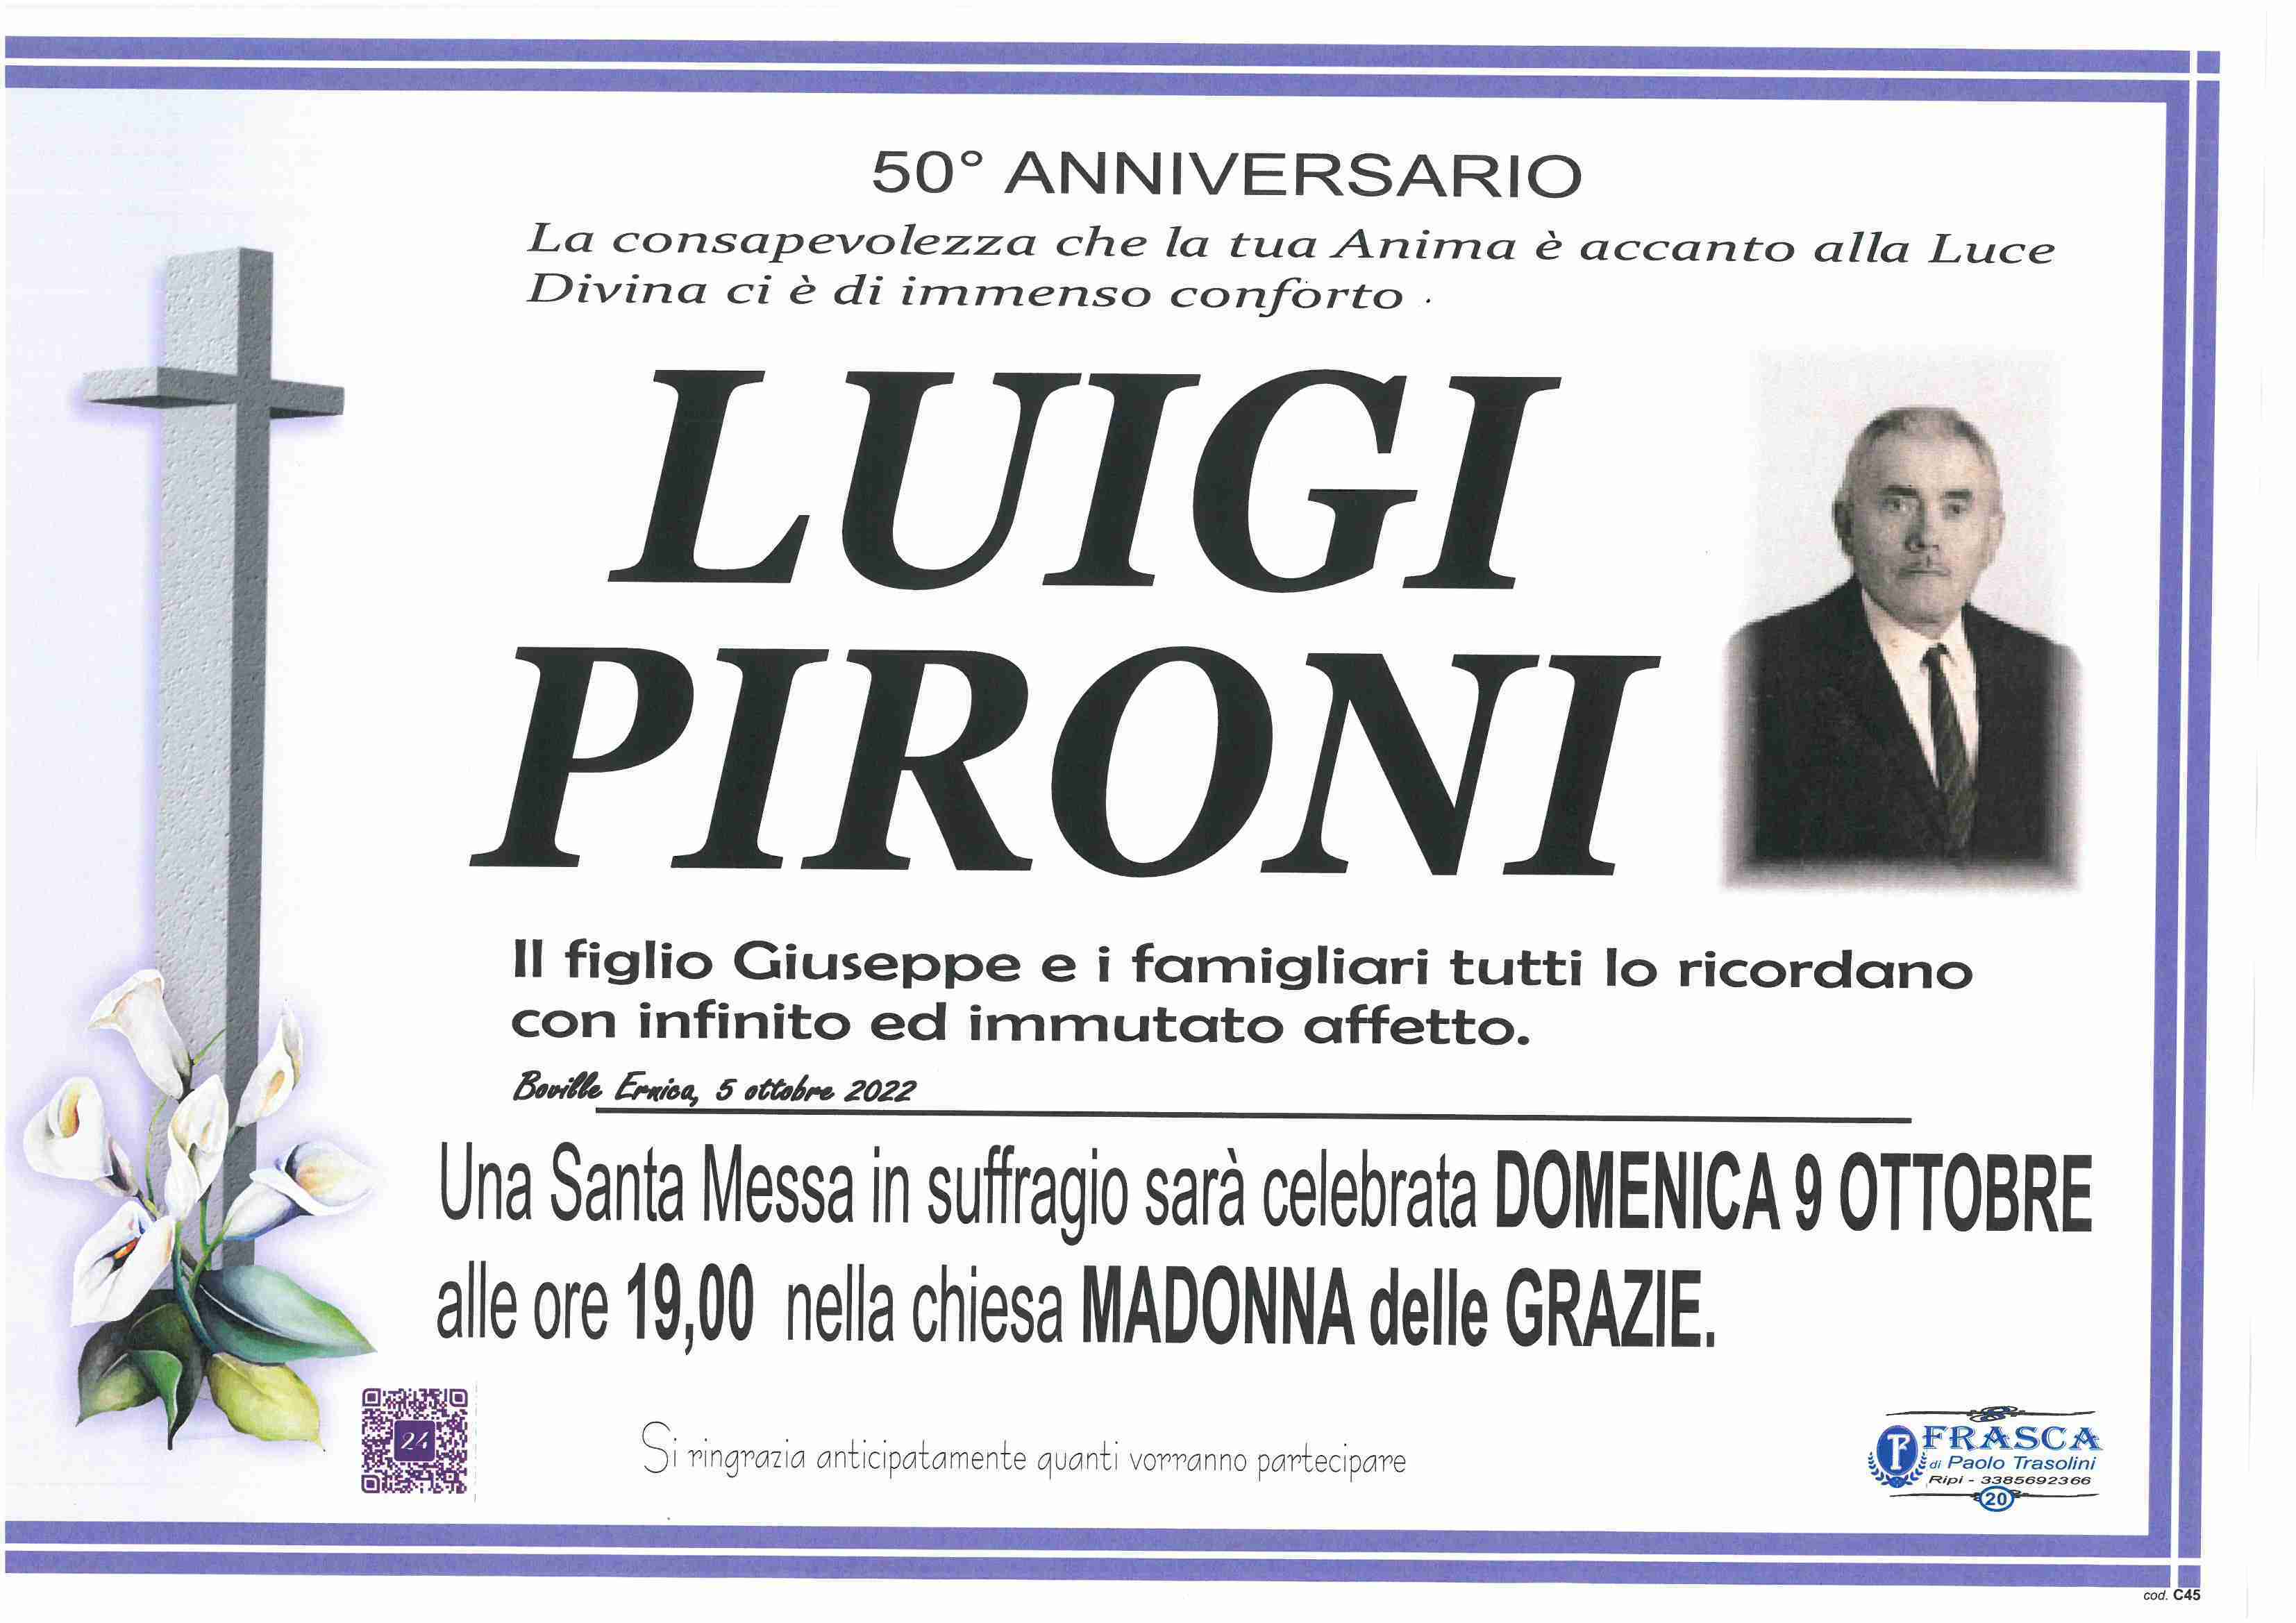 Luigi Pironi